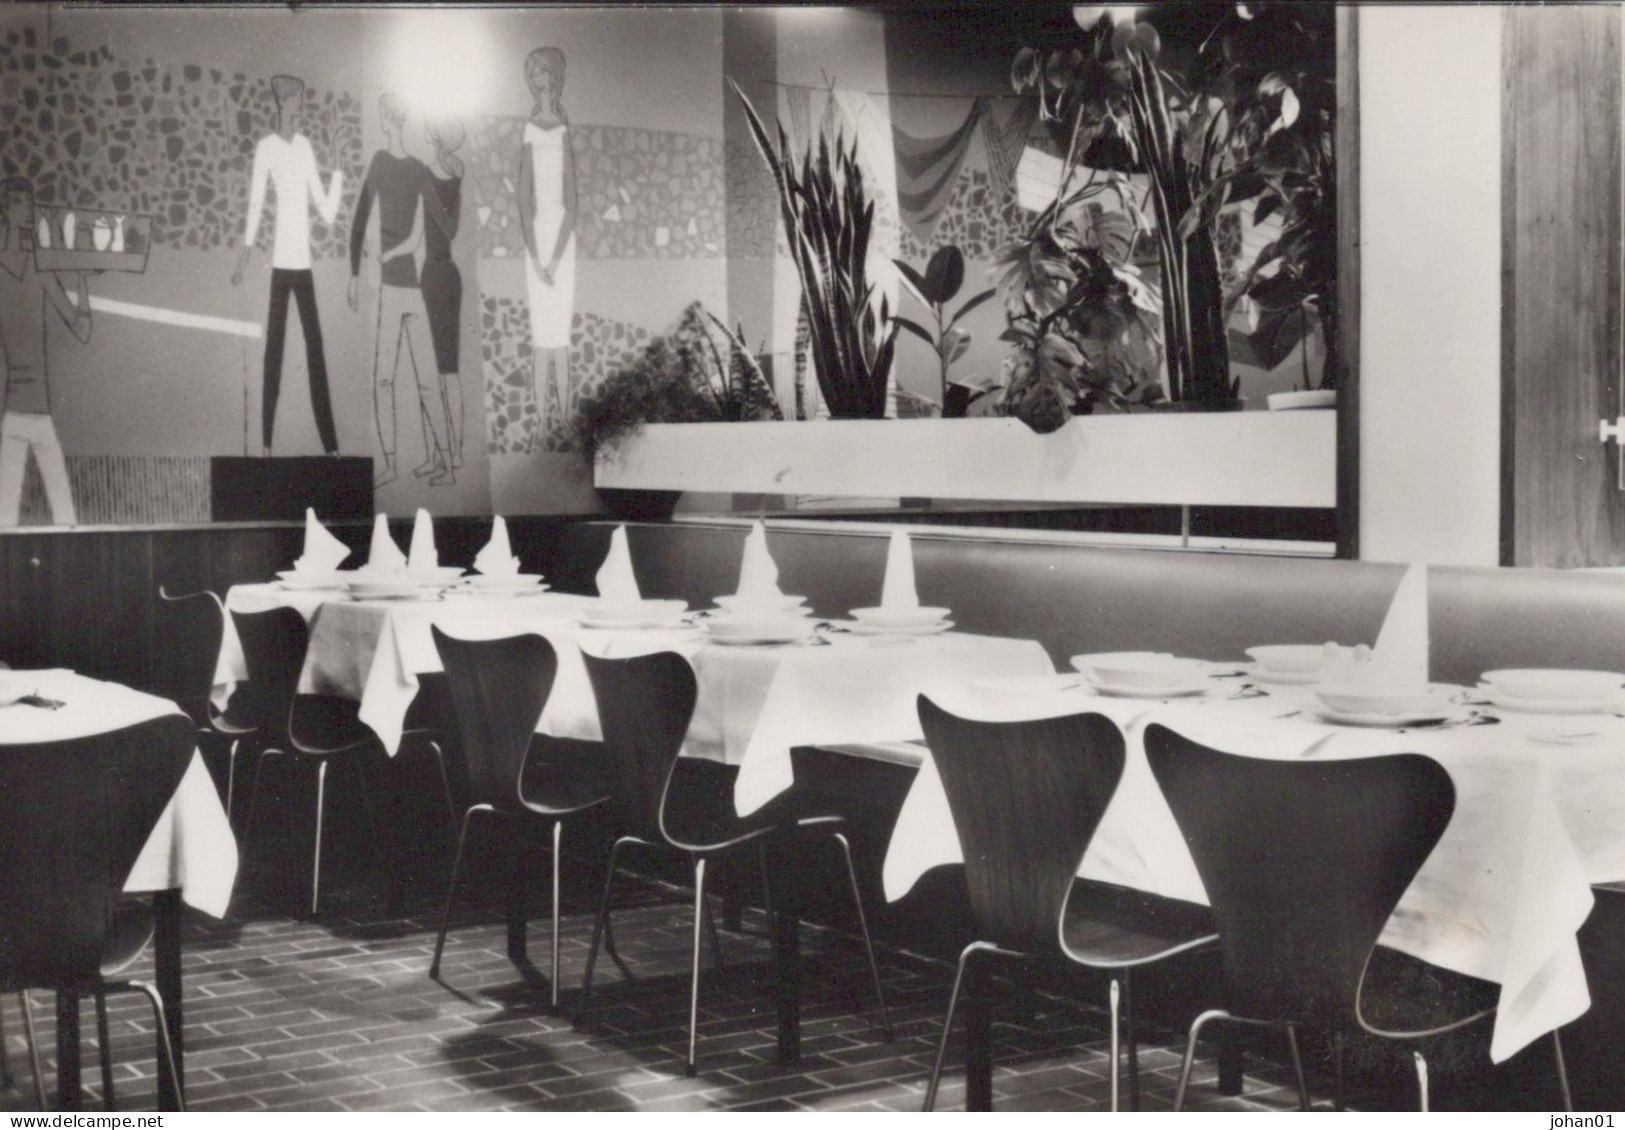 HASSELT - 1956 - 5 ansichten café rest DE VOLKSMACHT